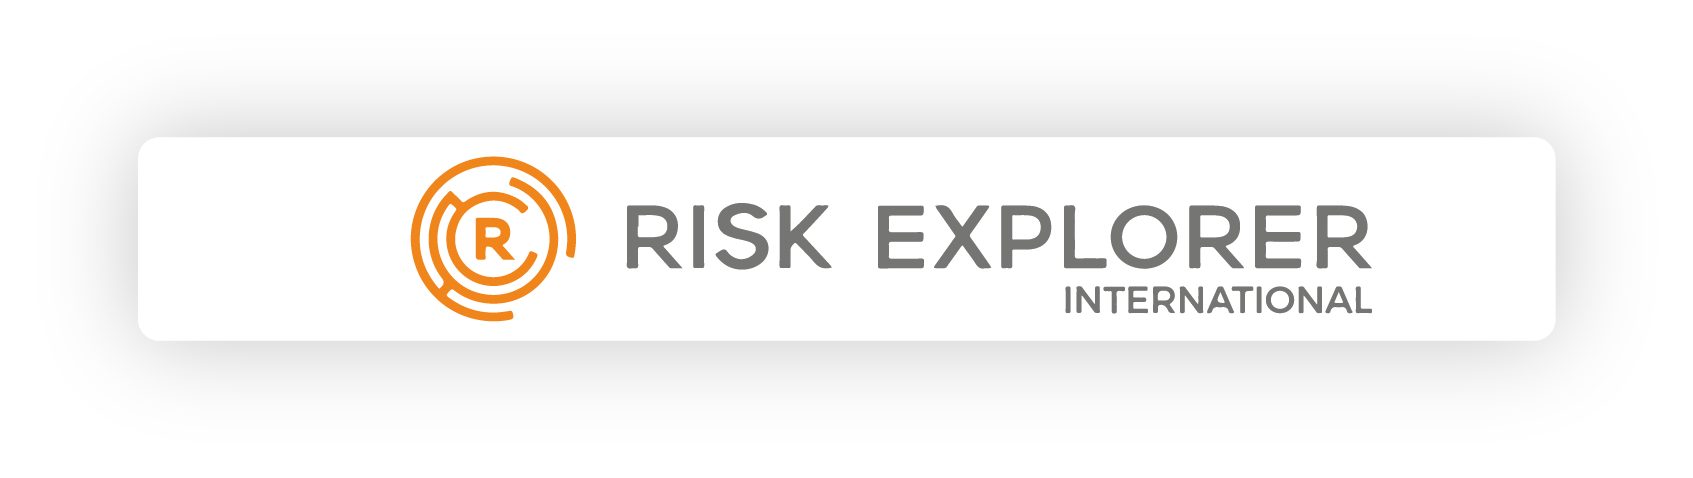 Risk explorer koppeling